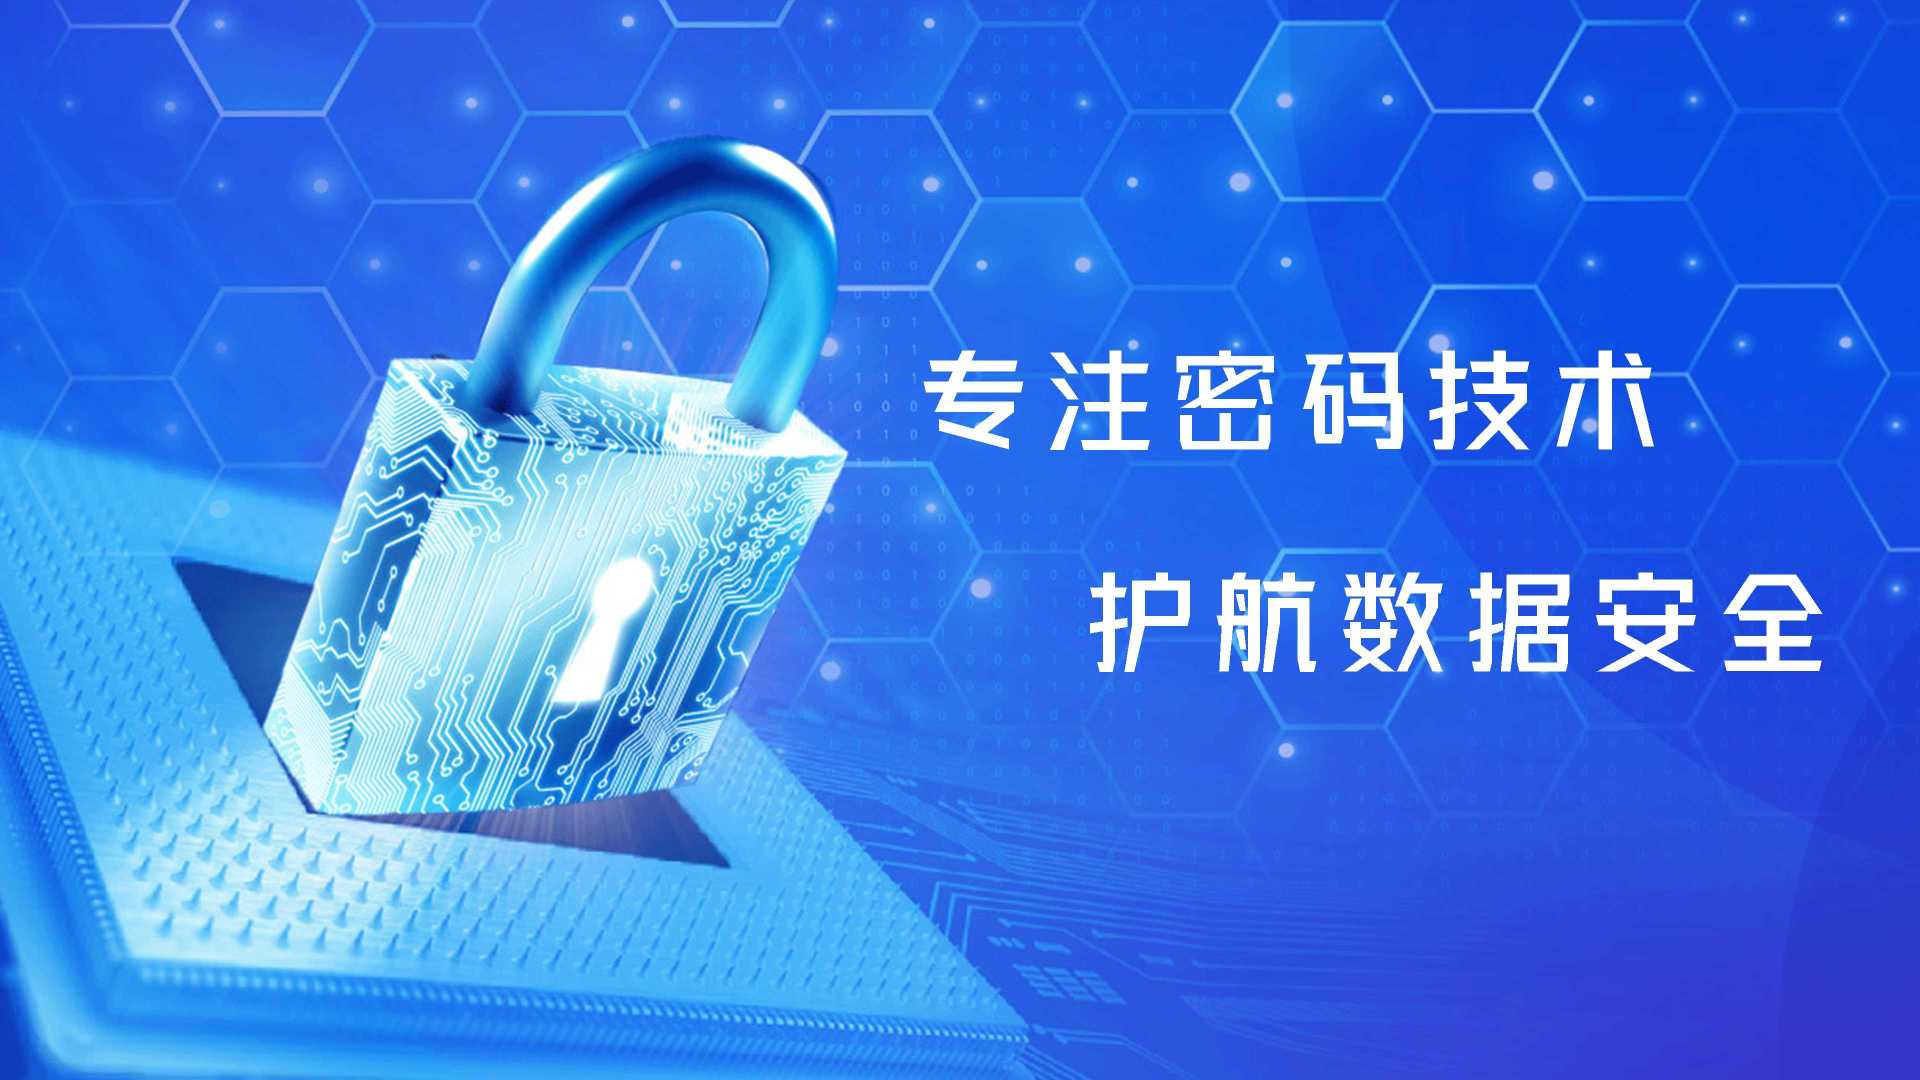 三未信安×光年映画丨密码技术丨IT企业宣传片